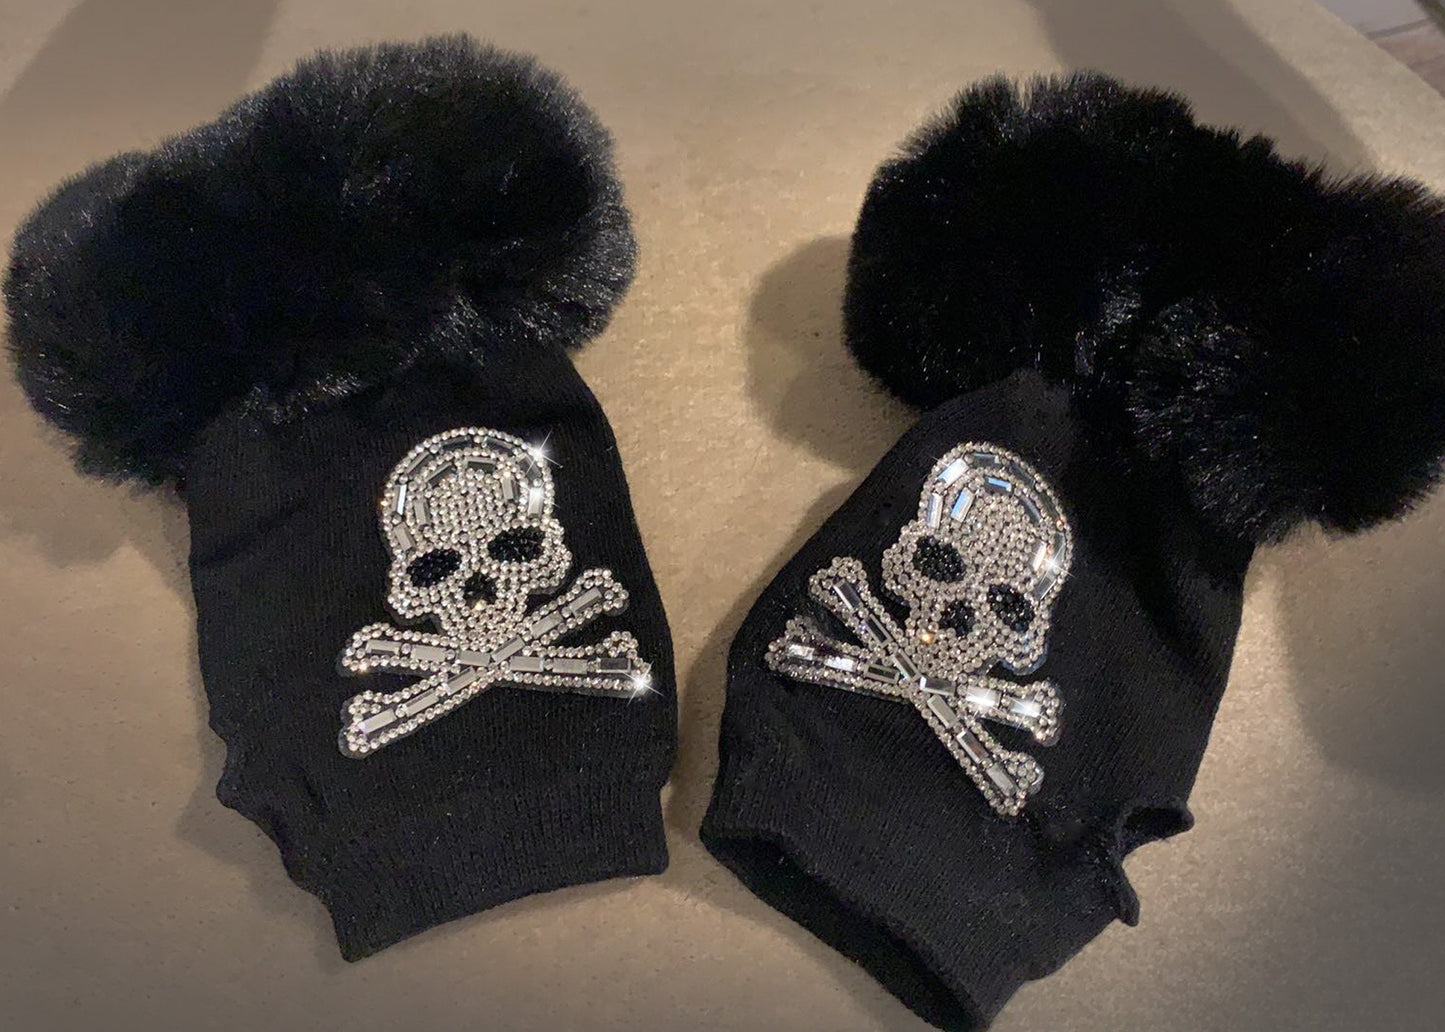 Rhinestone Skull Fingerless Gloves